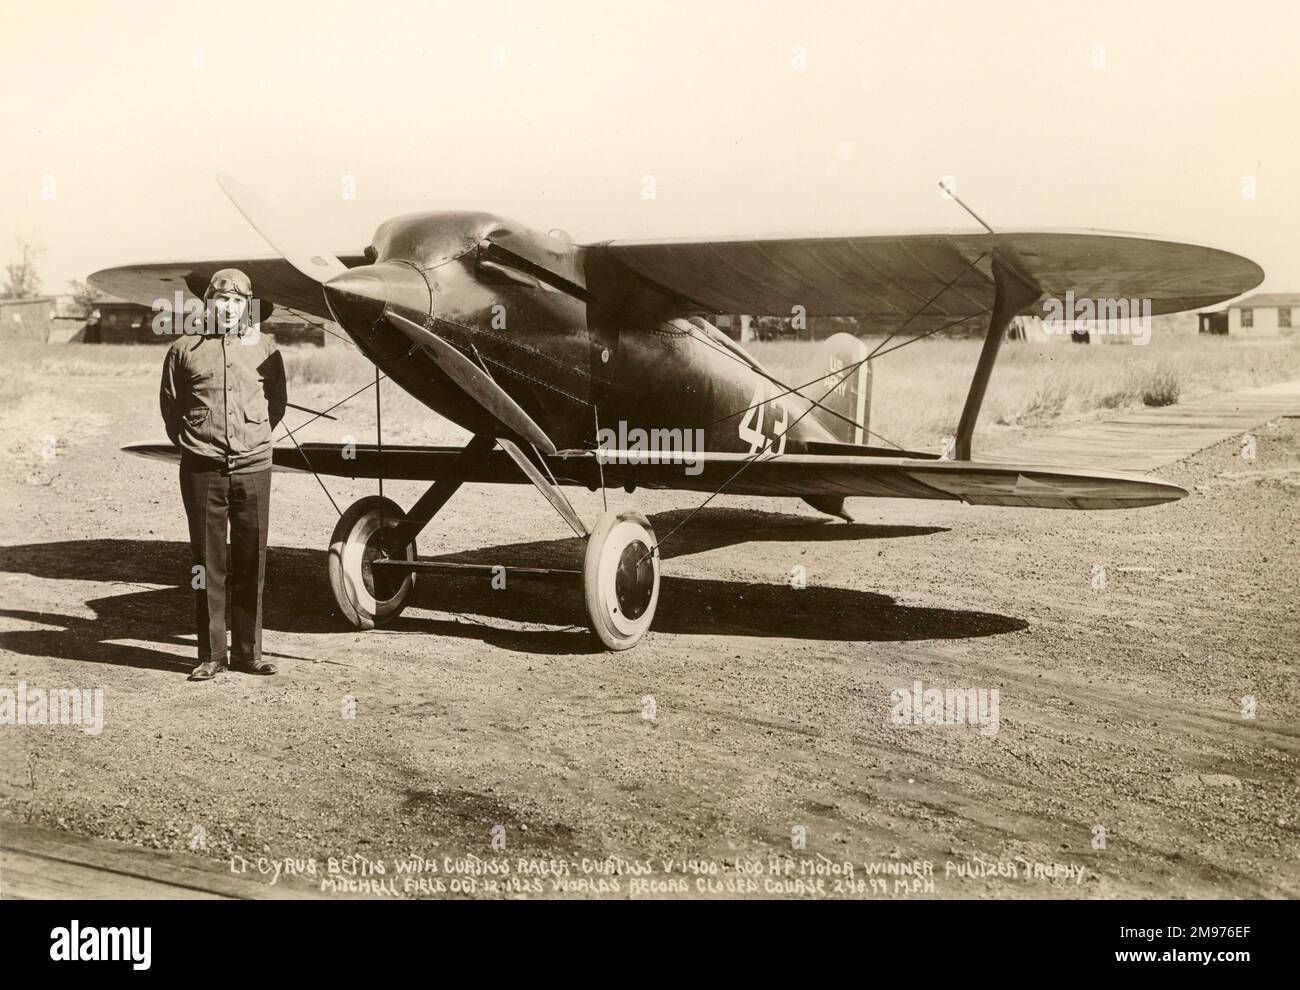 LT Cyrus Bettis con il modello Curtiss 42 R3C-1 Pulitzer Racer vincitore del Trofeo Pulitzer al Mitchell Field, 12 ottobre 1925. Foto Stock